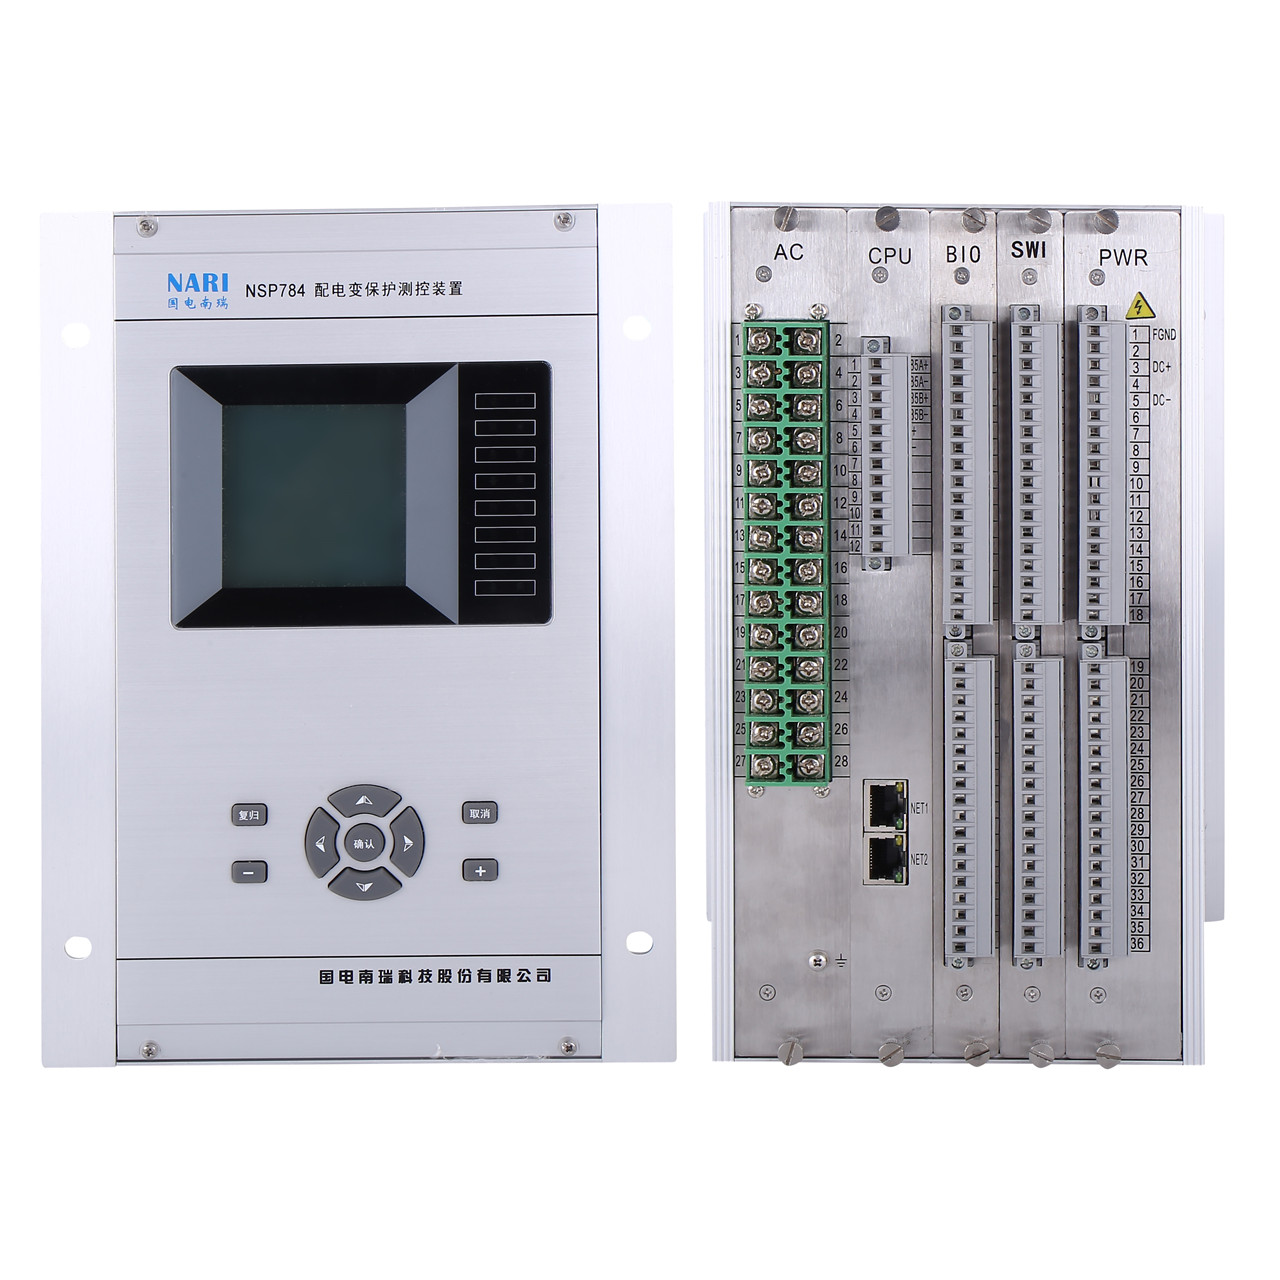 国电南瑞nsp784配电变保护测控装置